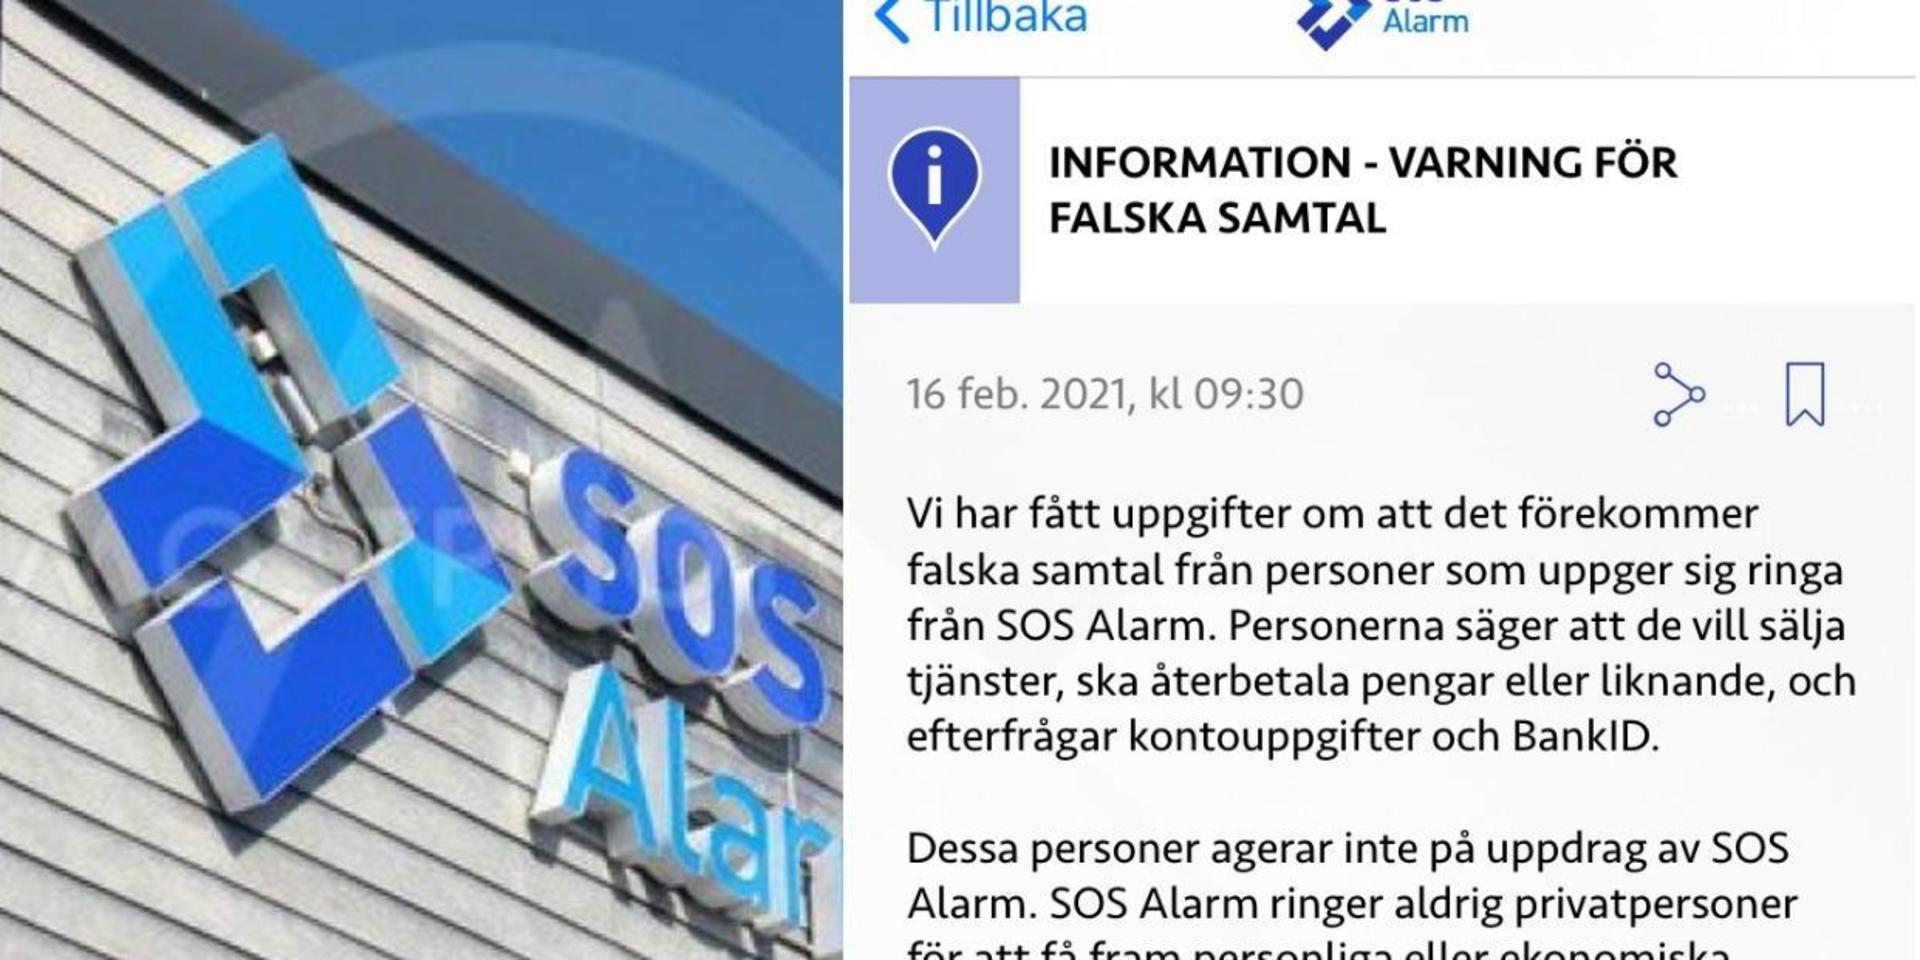 På tisdagen skickade SOS Alarm ut en varning för bedragare i sin app. Arkivfoto och skärmdump